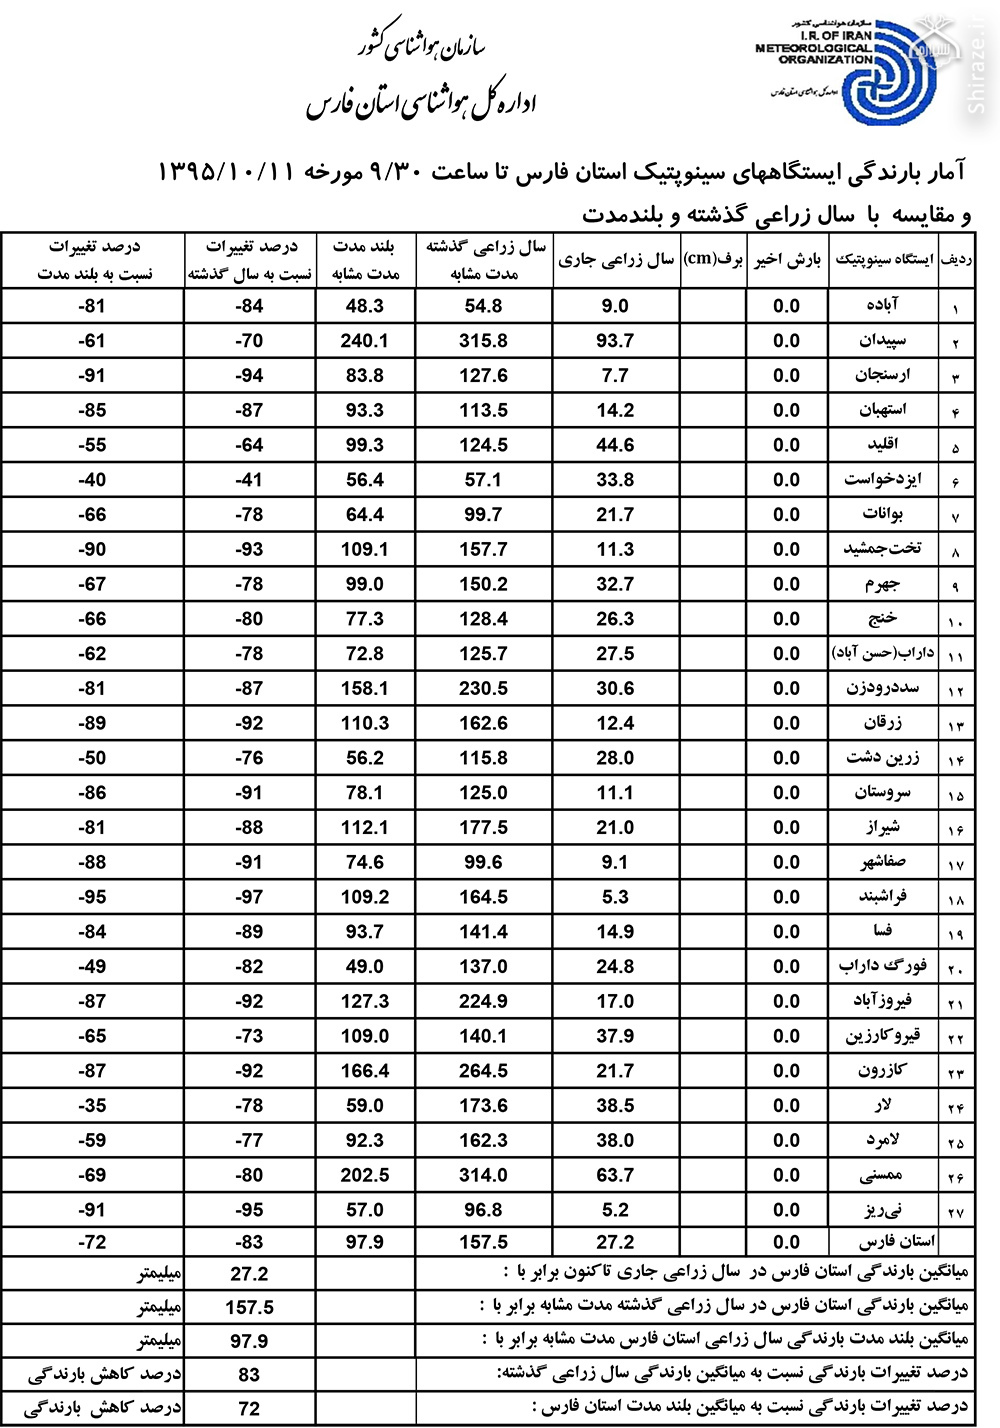 اعلام میزان بارندگی شهرستان های استان فارس در سال جاری+ جدول